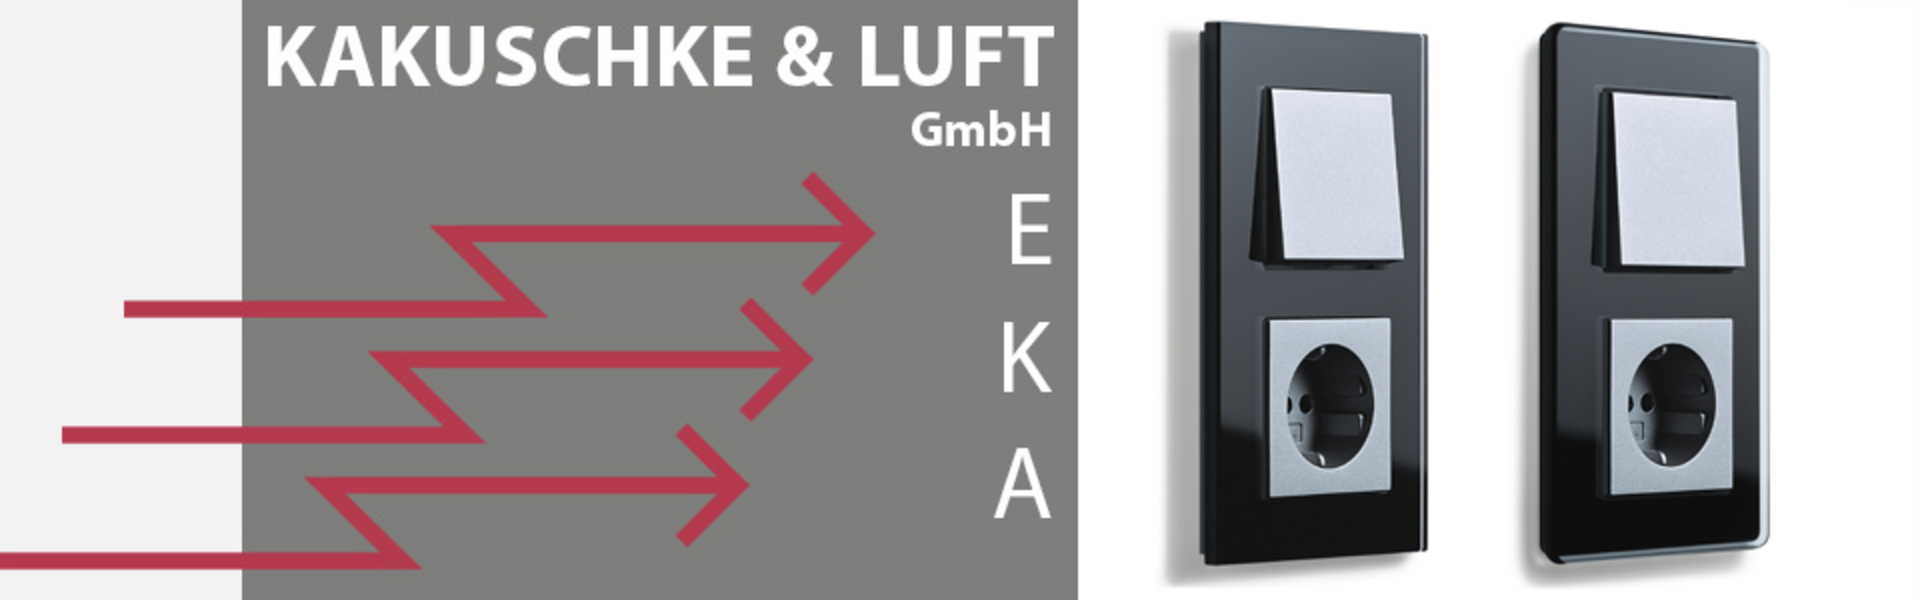 Kakuschke & Luft GmbH in Gera